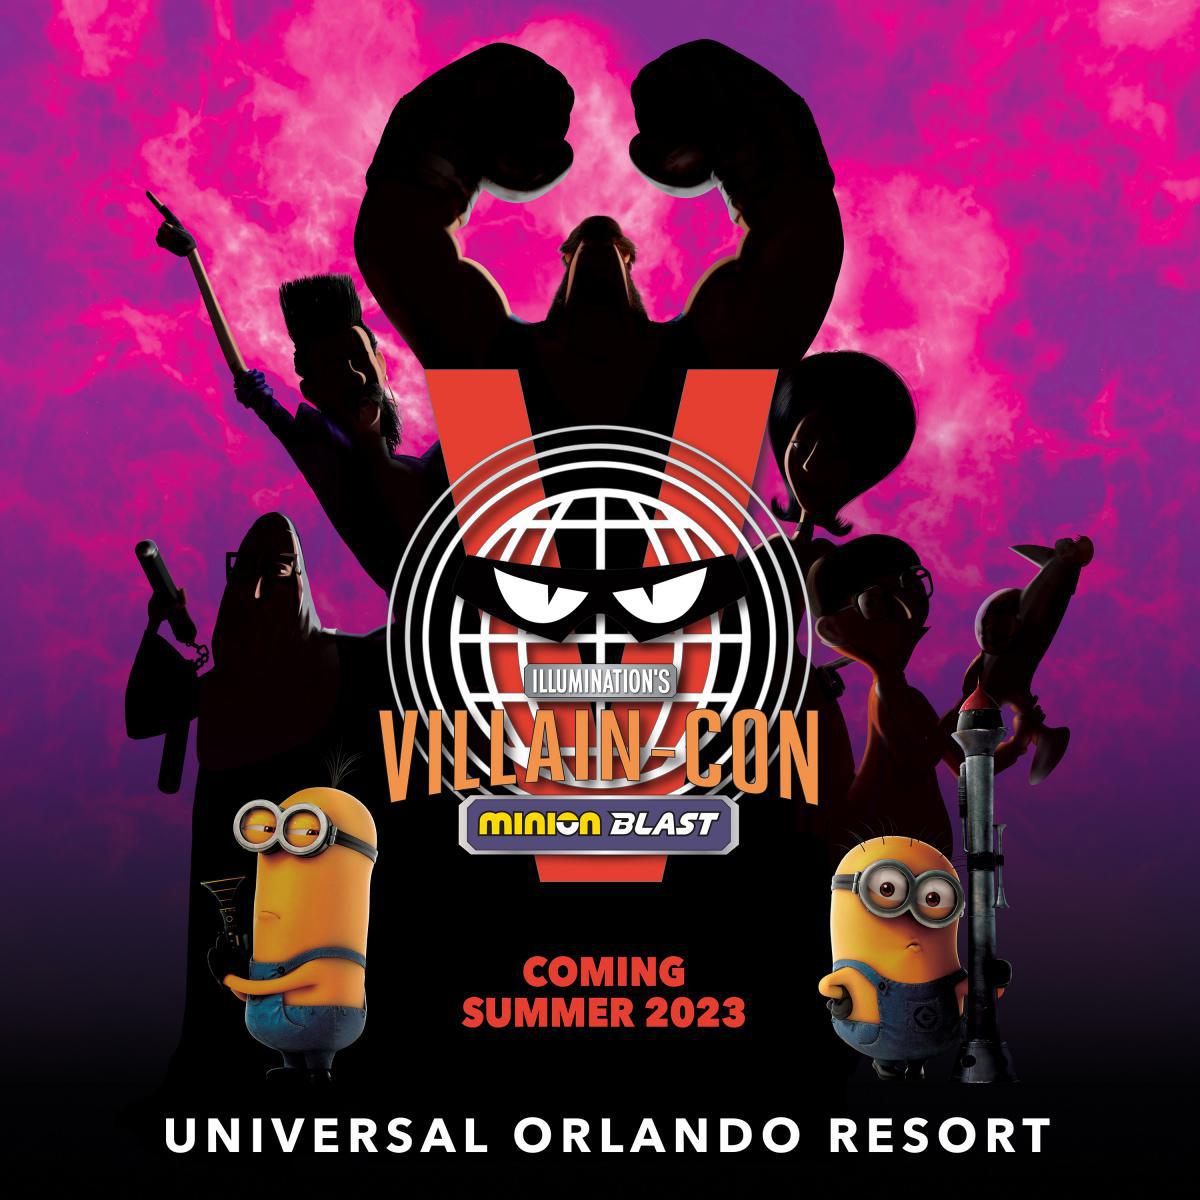 Universal Orlando Resort enthüllt brandneue Details zur Villain-Con Minion Blast von Illumination